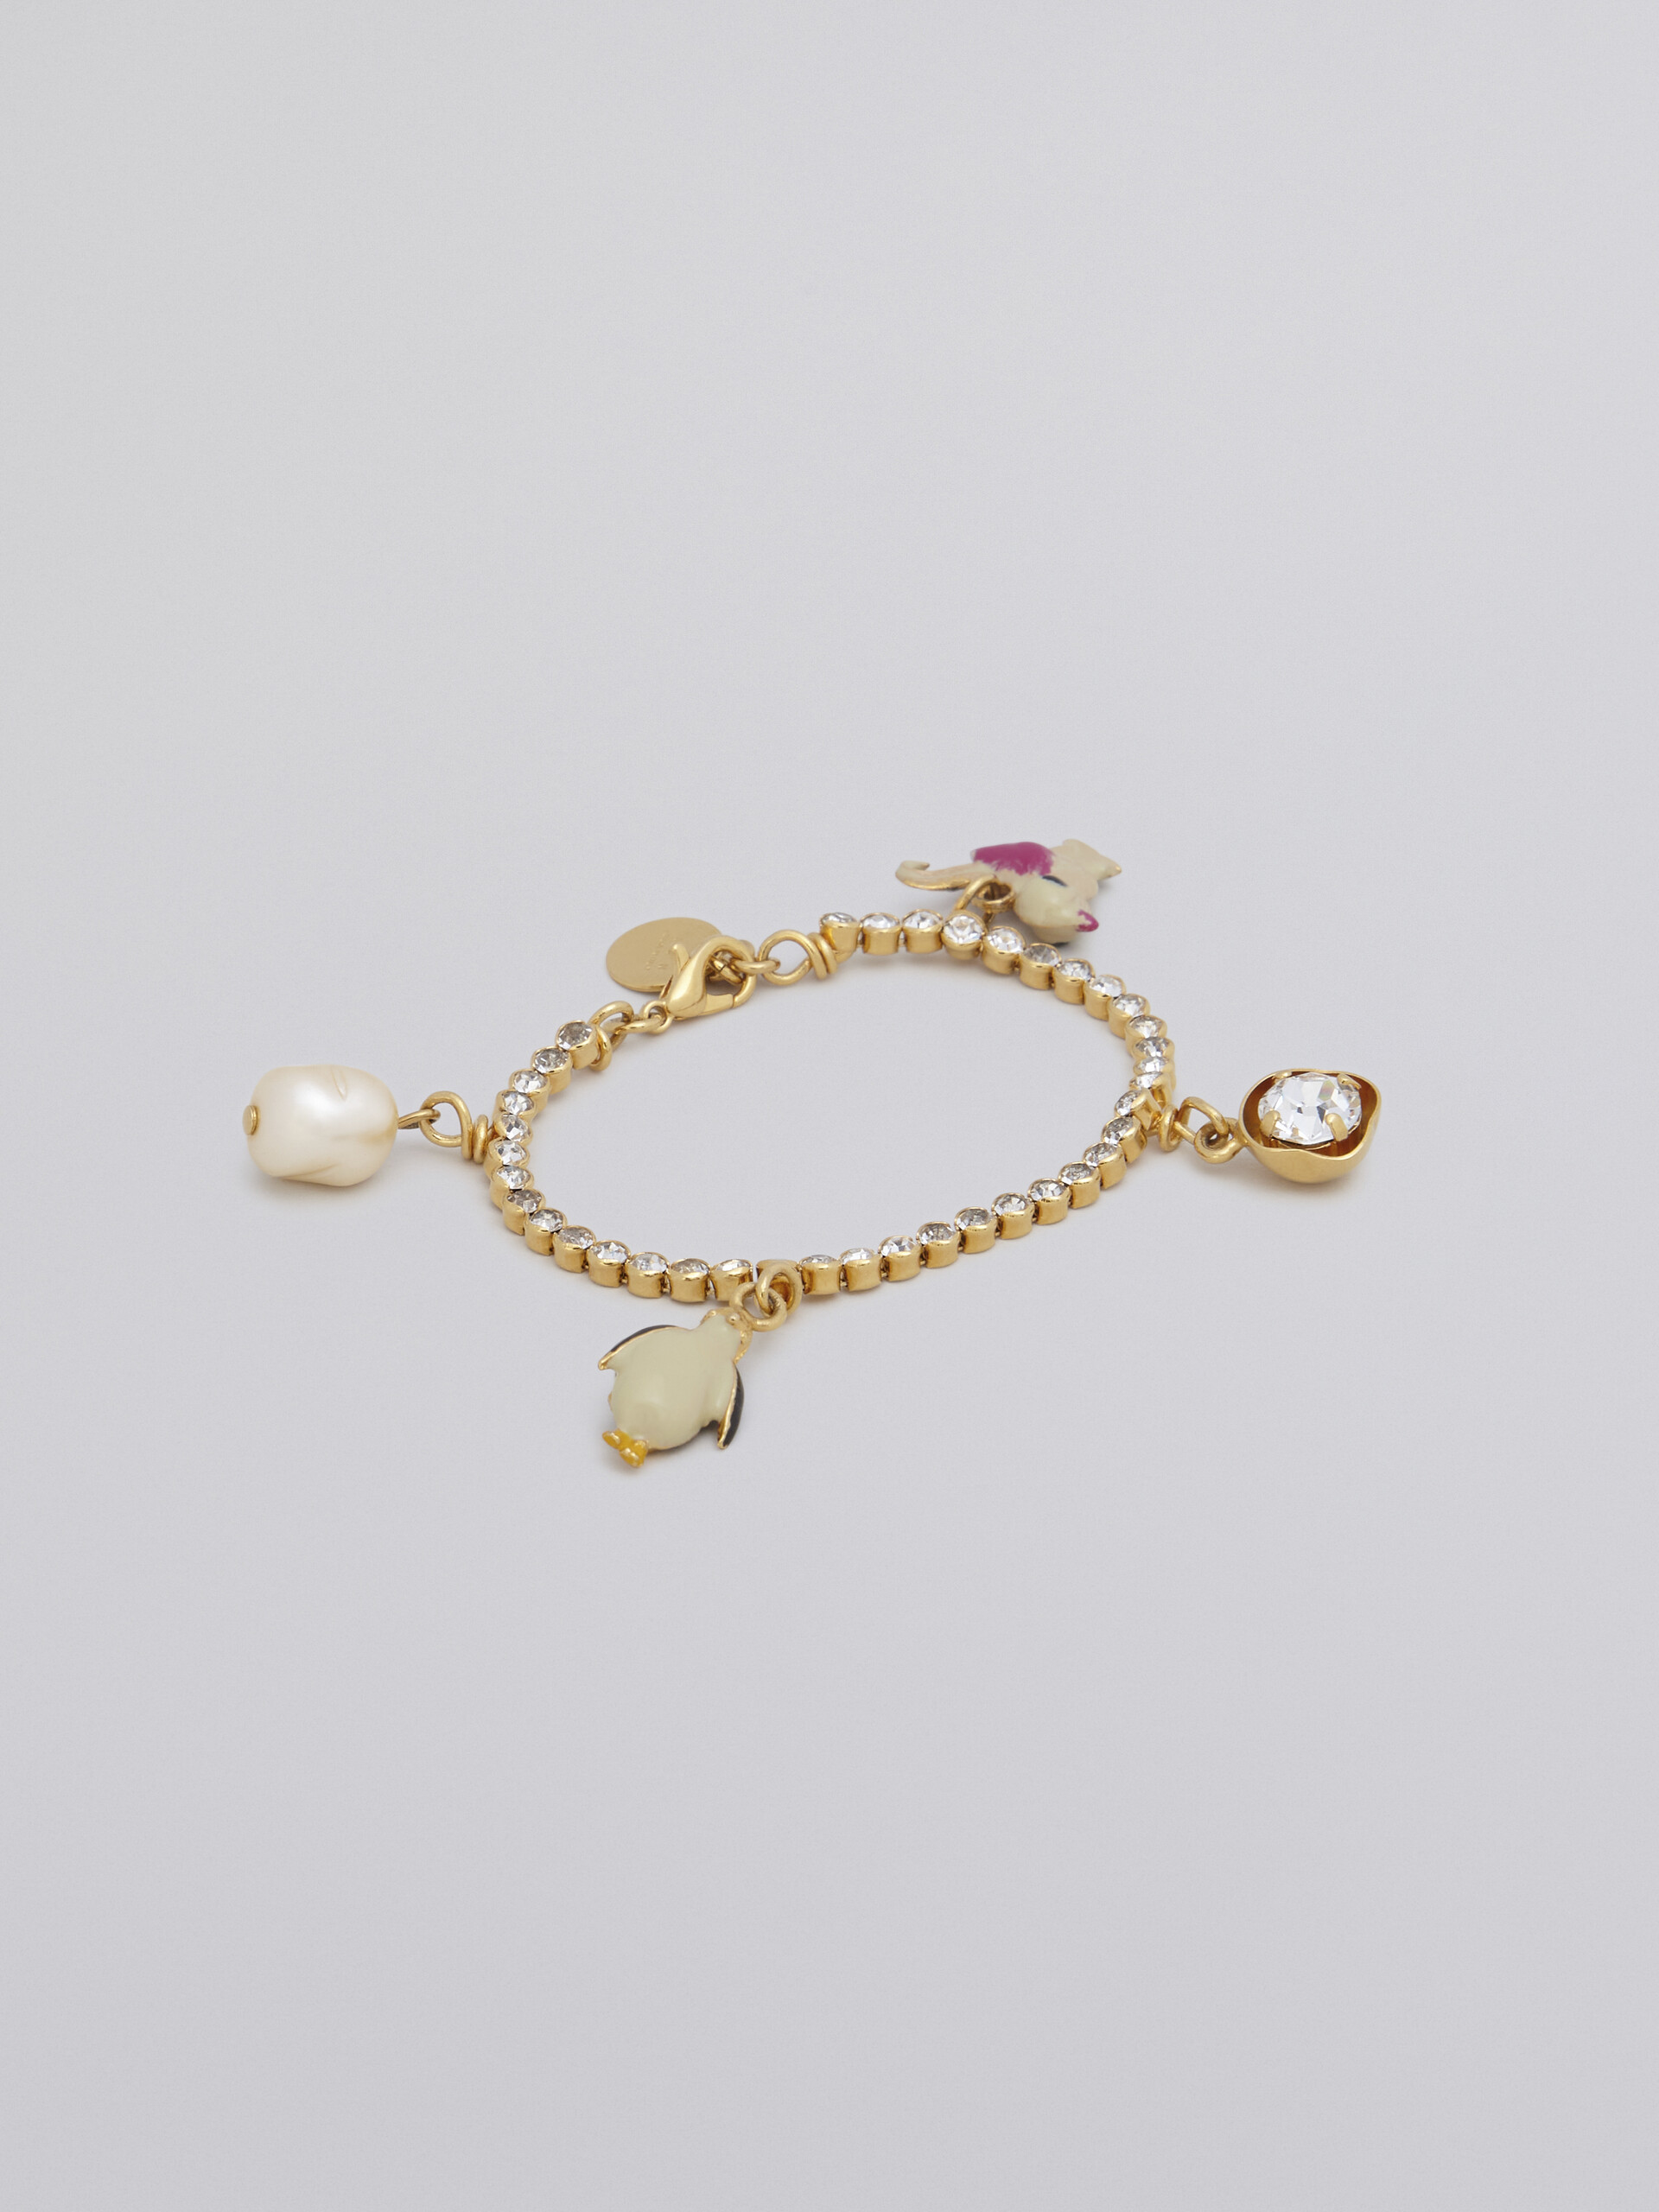 Brass FOUND bracelet with charms - Bracelets - Image 1